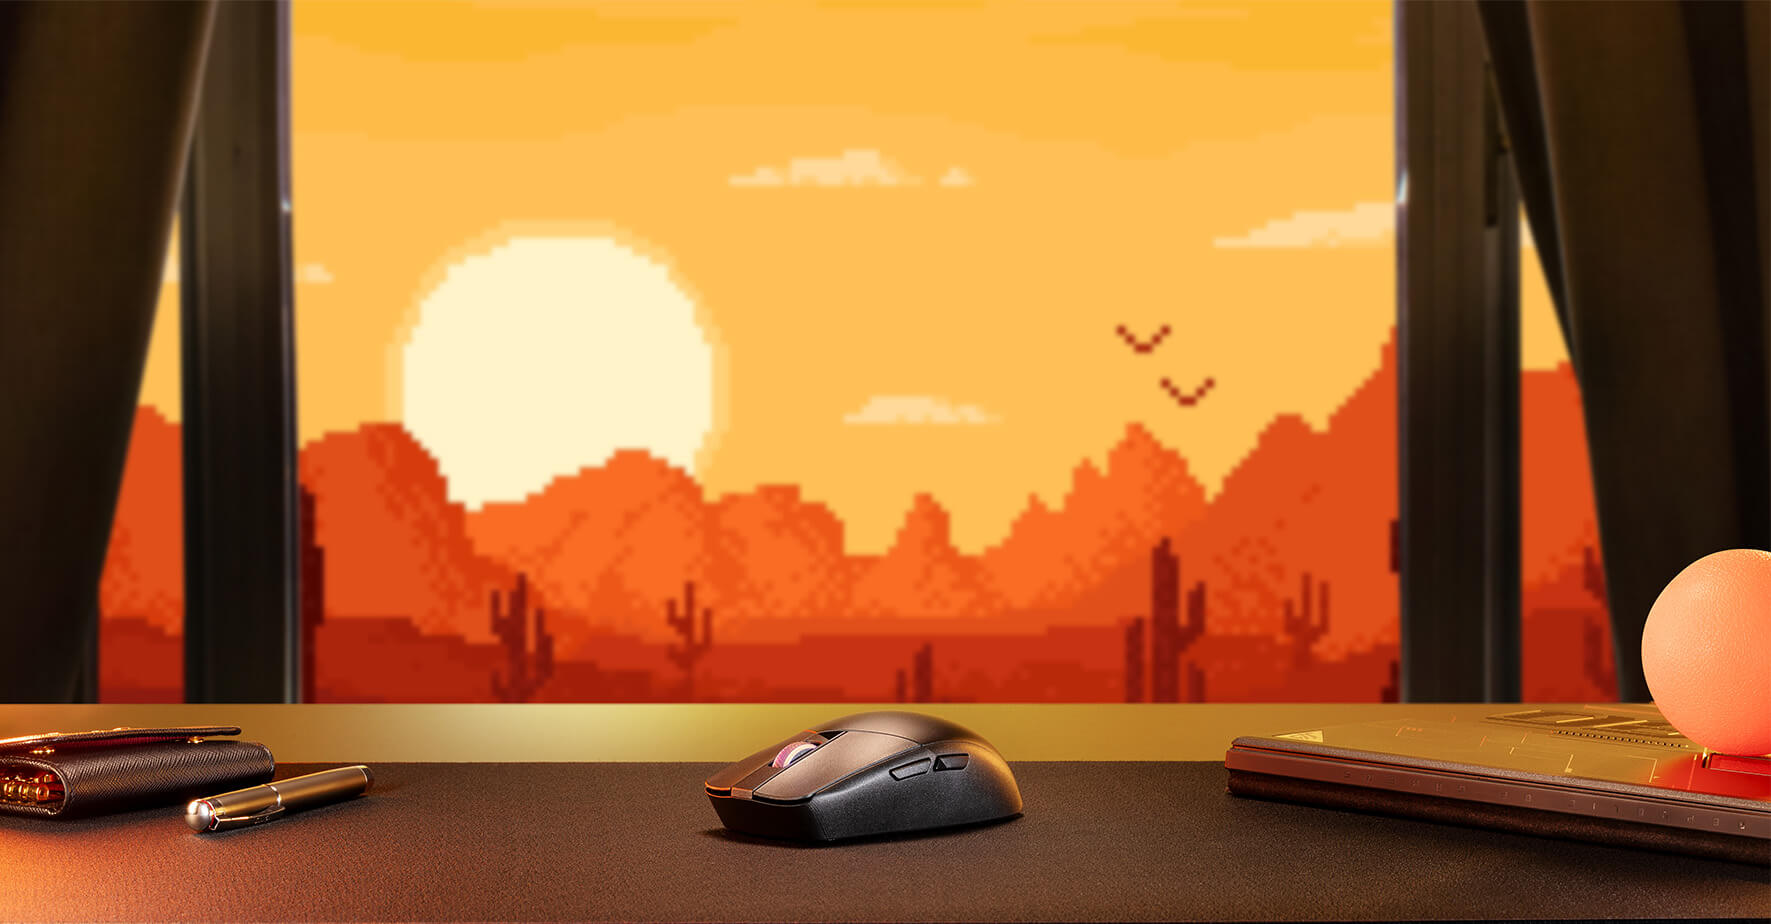 De ROG Strix Impact III Wireless op een tafel tegen een oranje woestijnachtergrond